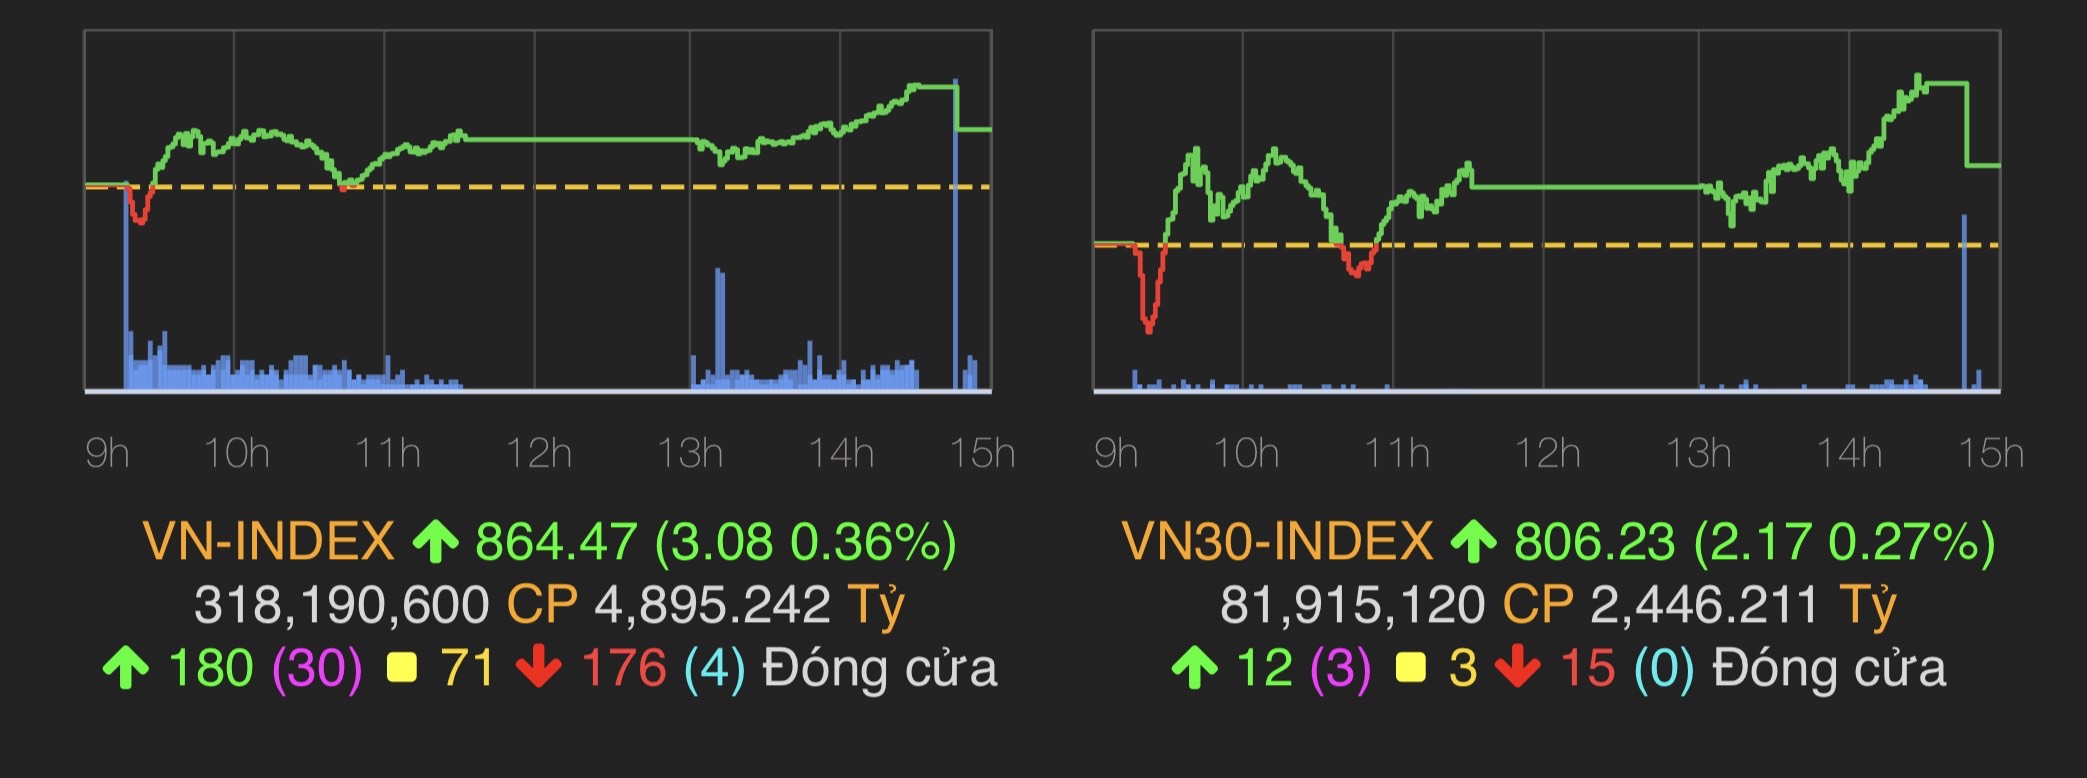 &nbsp;VN-Index tăng 3,08 điểm (0,36%) lên 864,47 điểm.